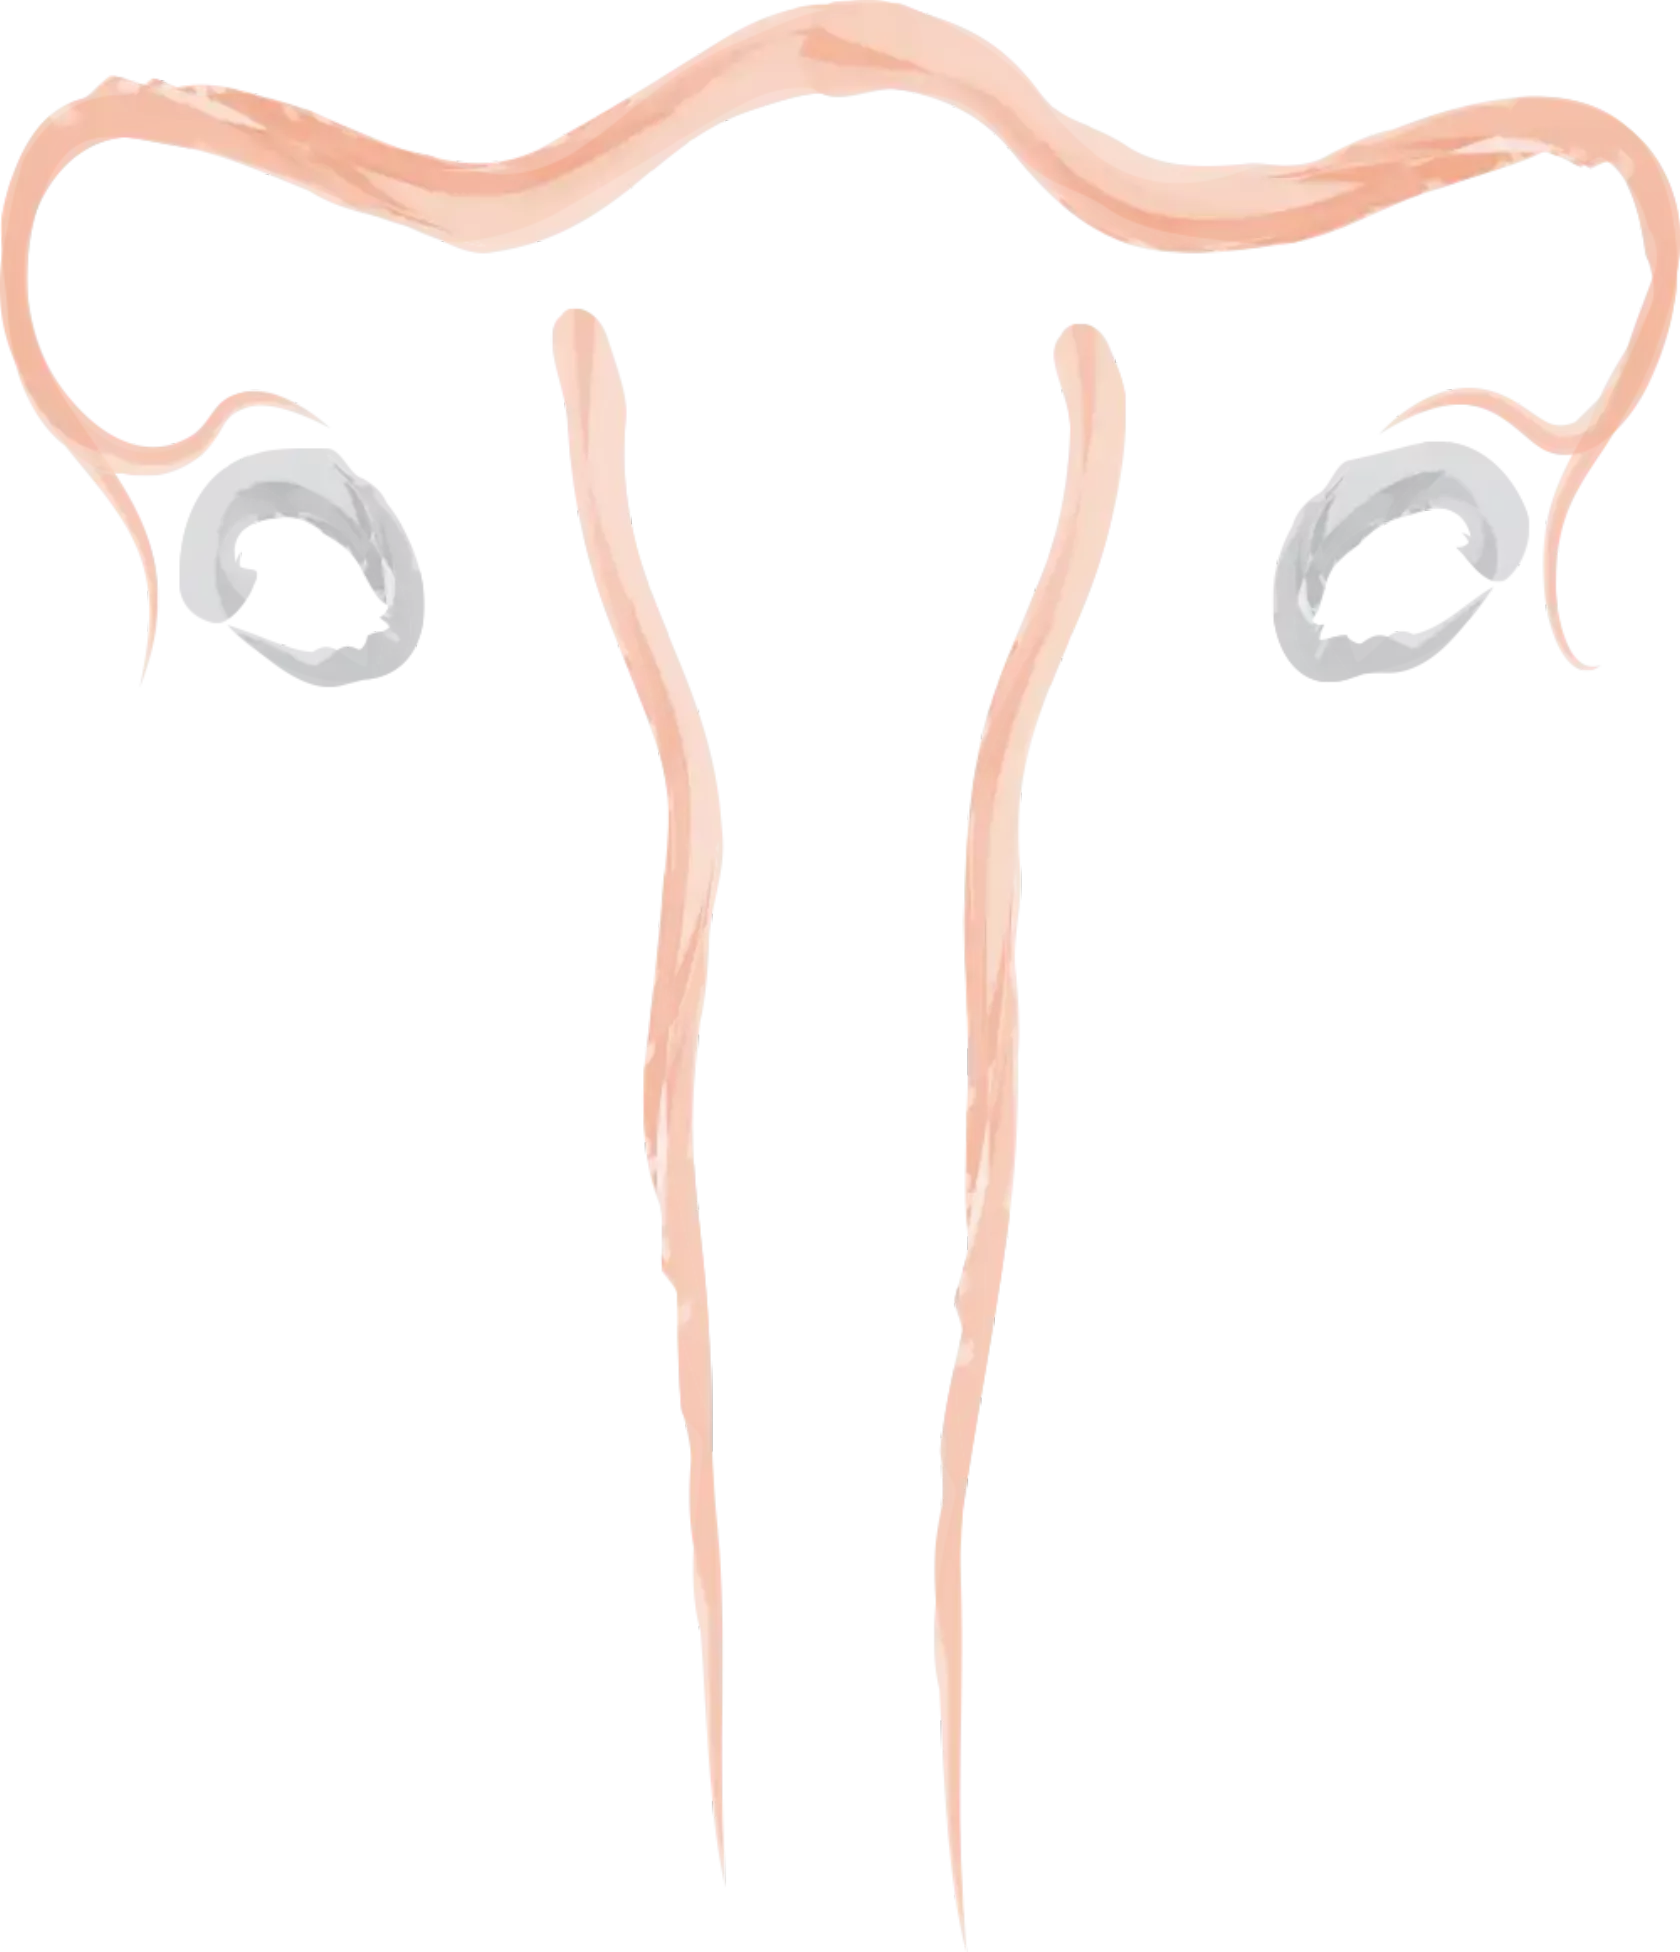 Filigrane Zeichnung der Ovarien, Adnexe, Gebärmutter und Vagina.